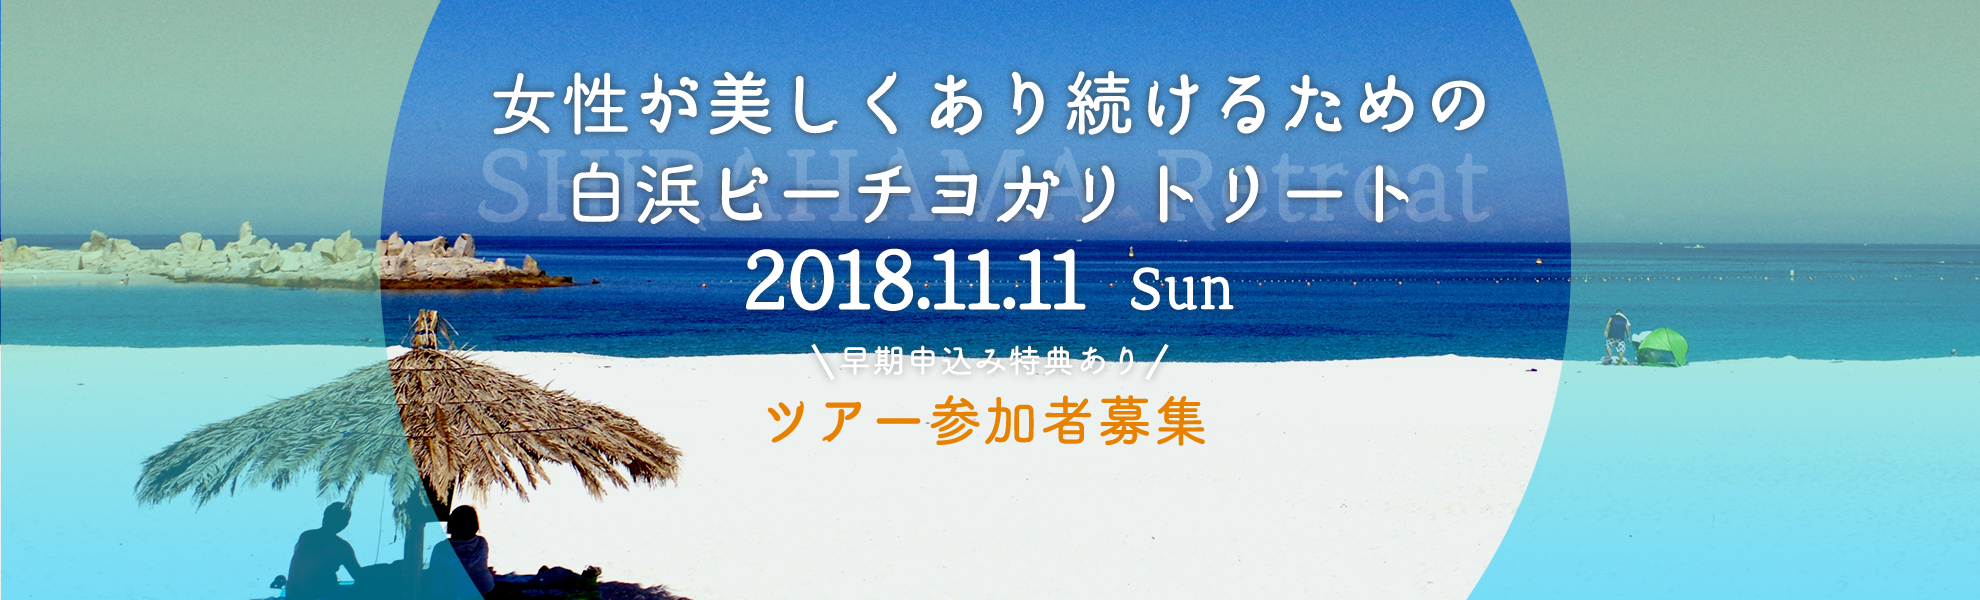 2018.11.11 Sun ツアー参加者募集スタート